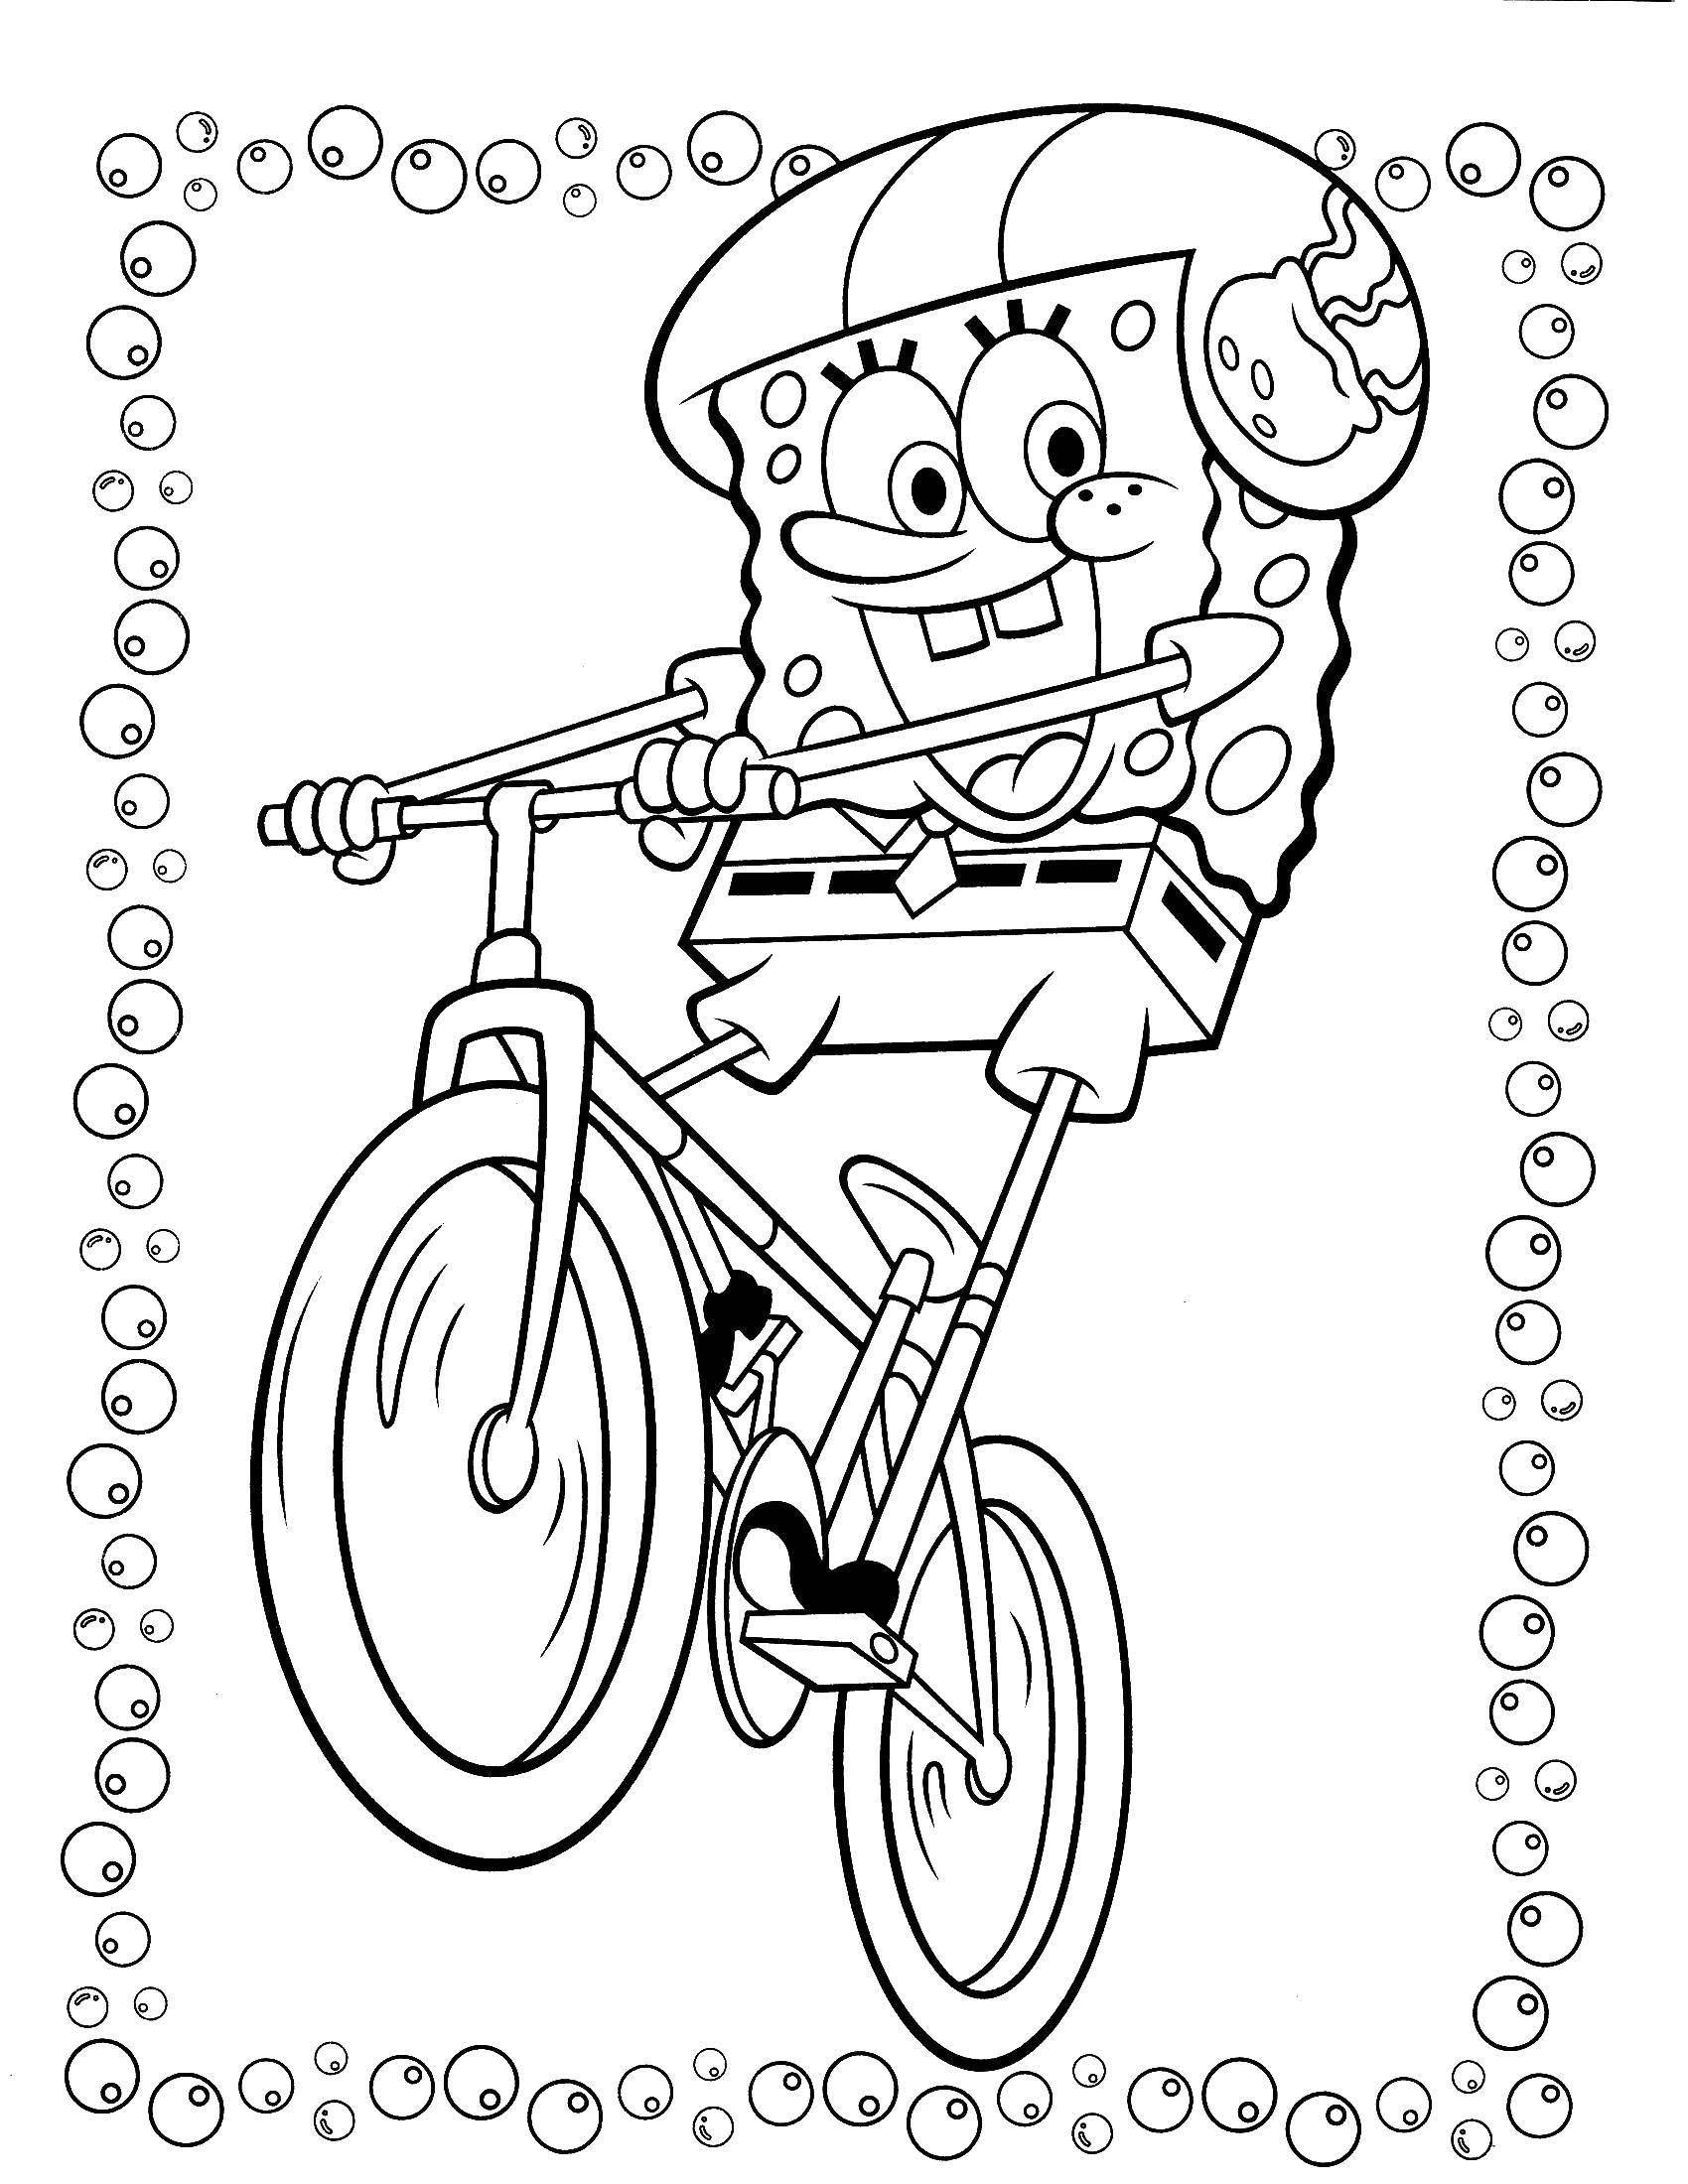  Спанч боб катается на велосипеде